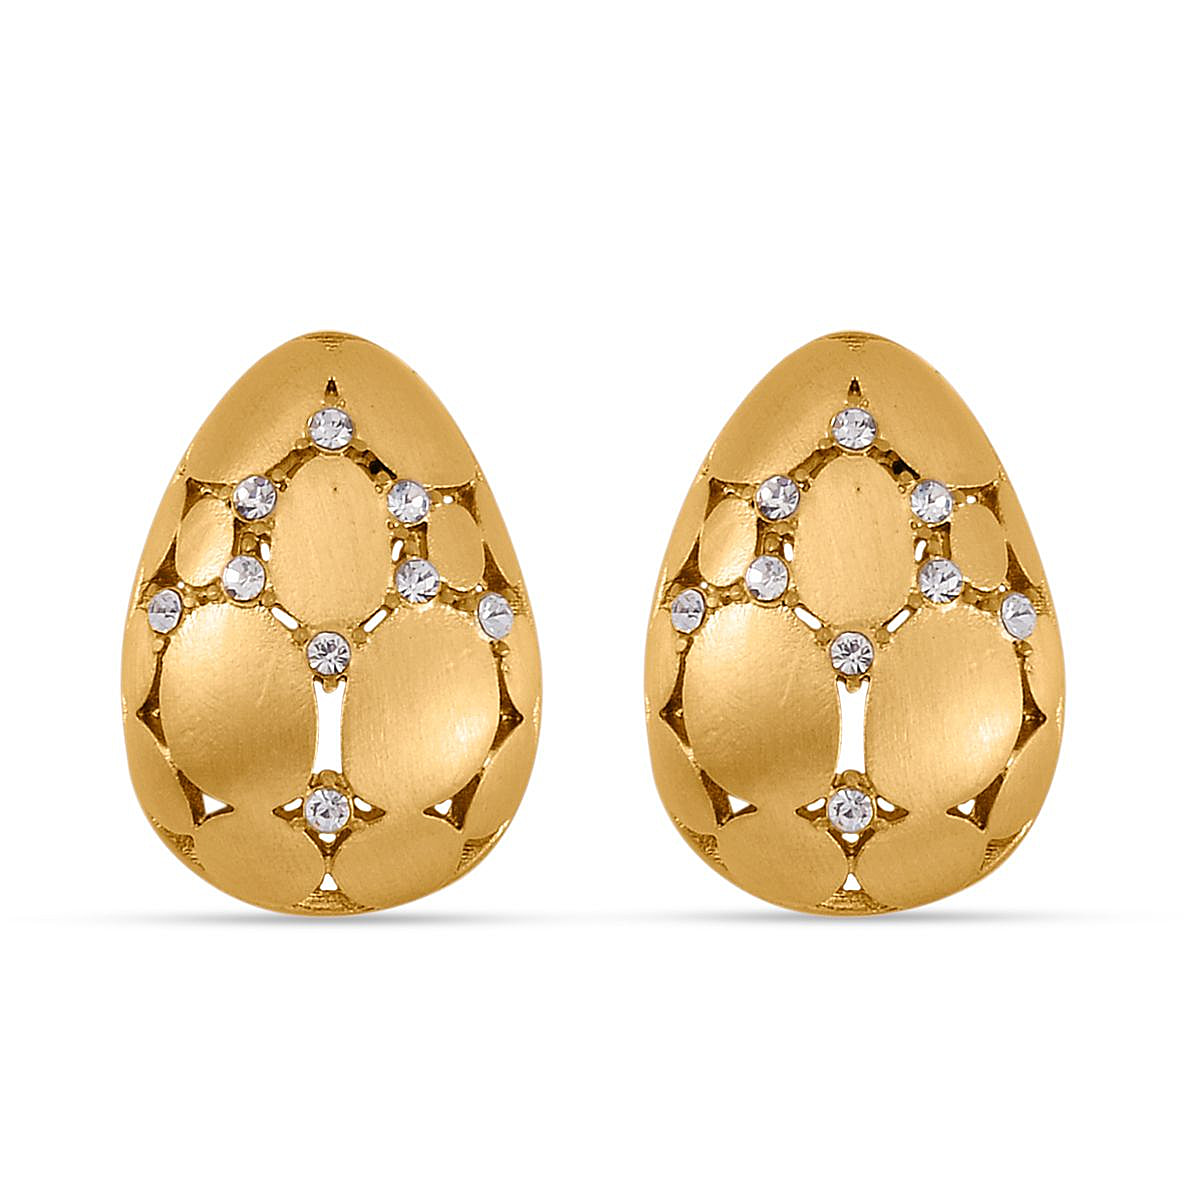 Designer Inspired- White Austrian Crystal Egg Earrings